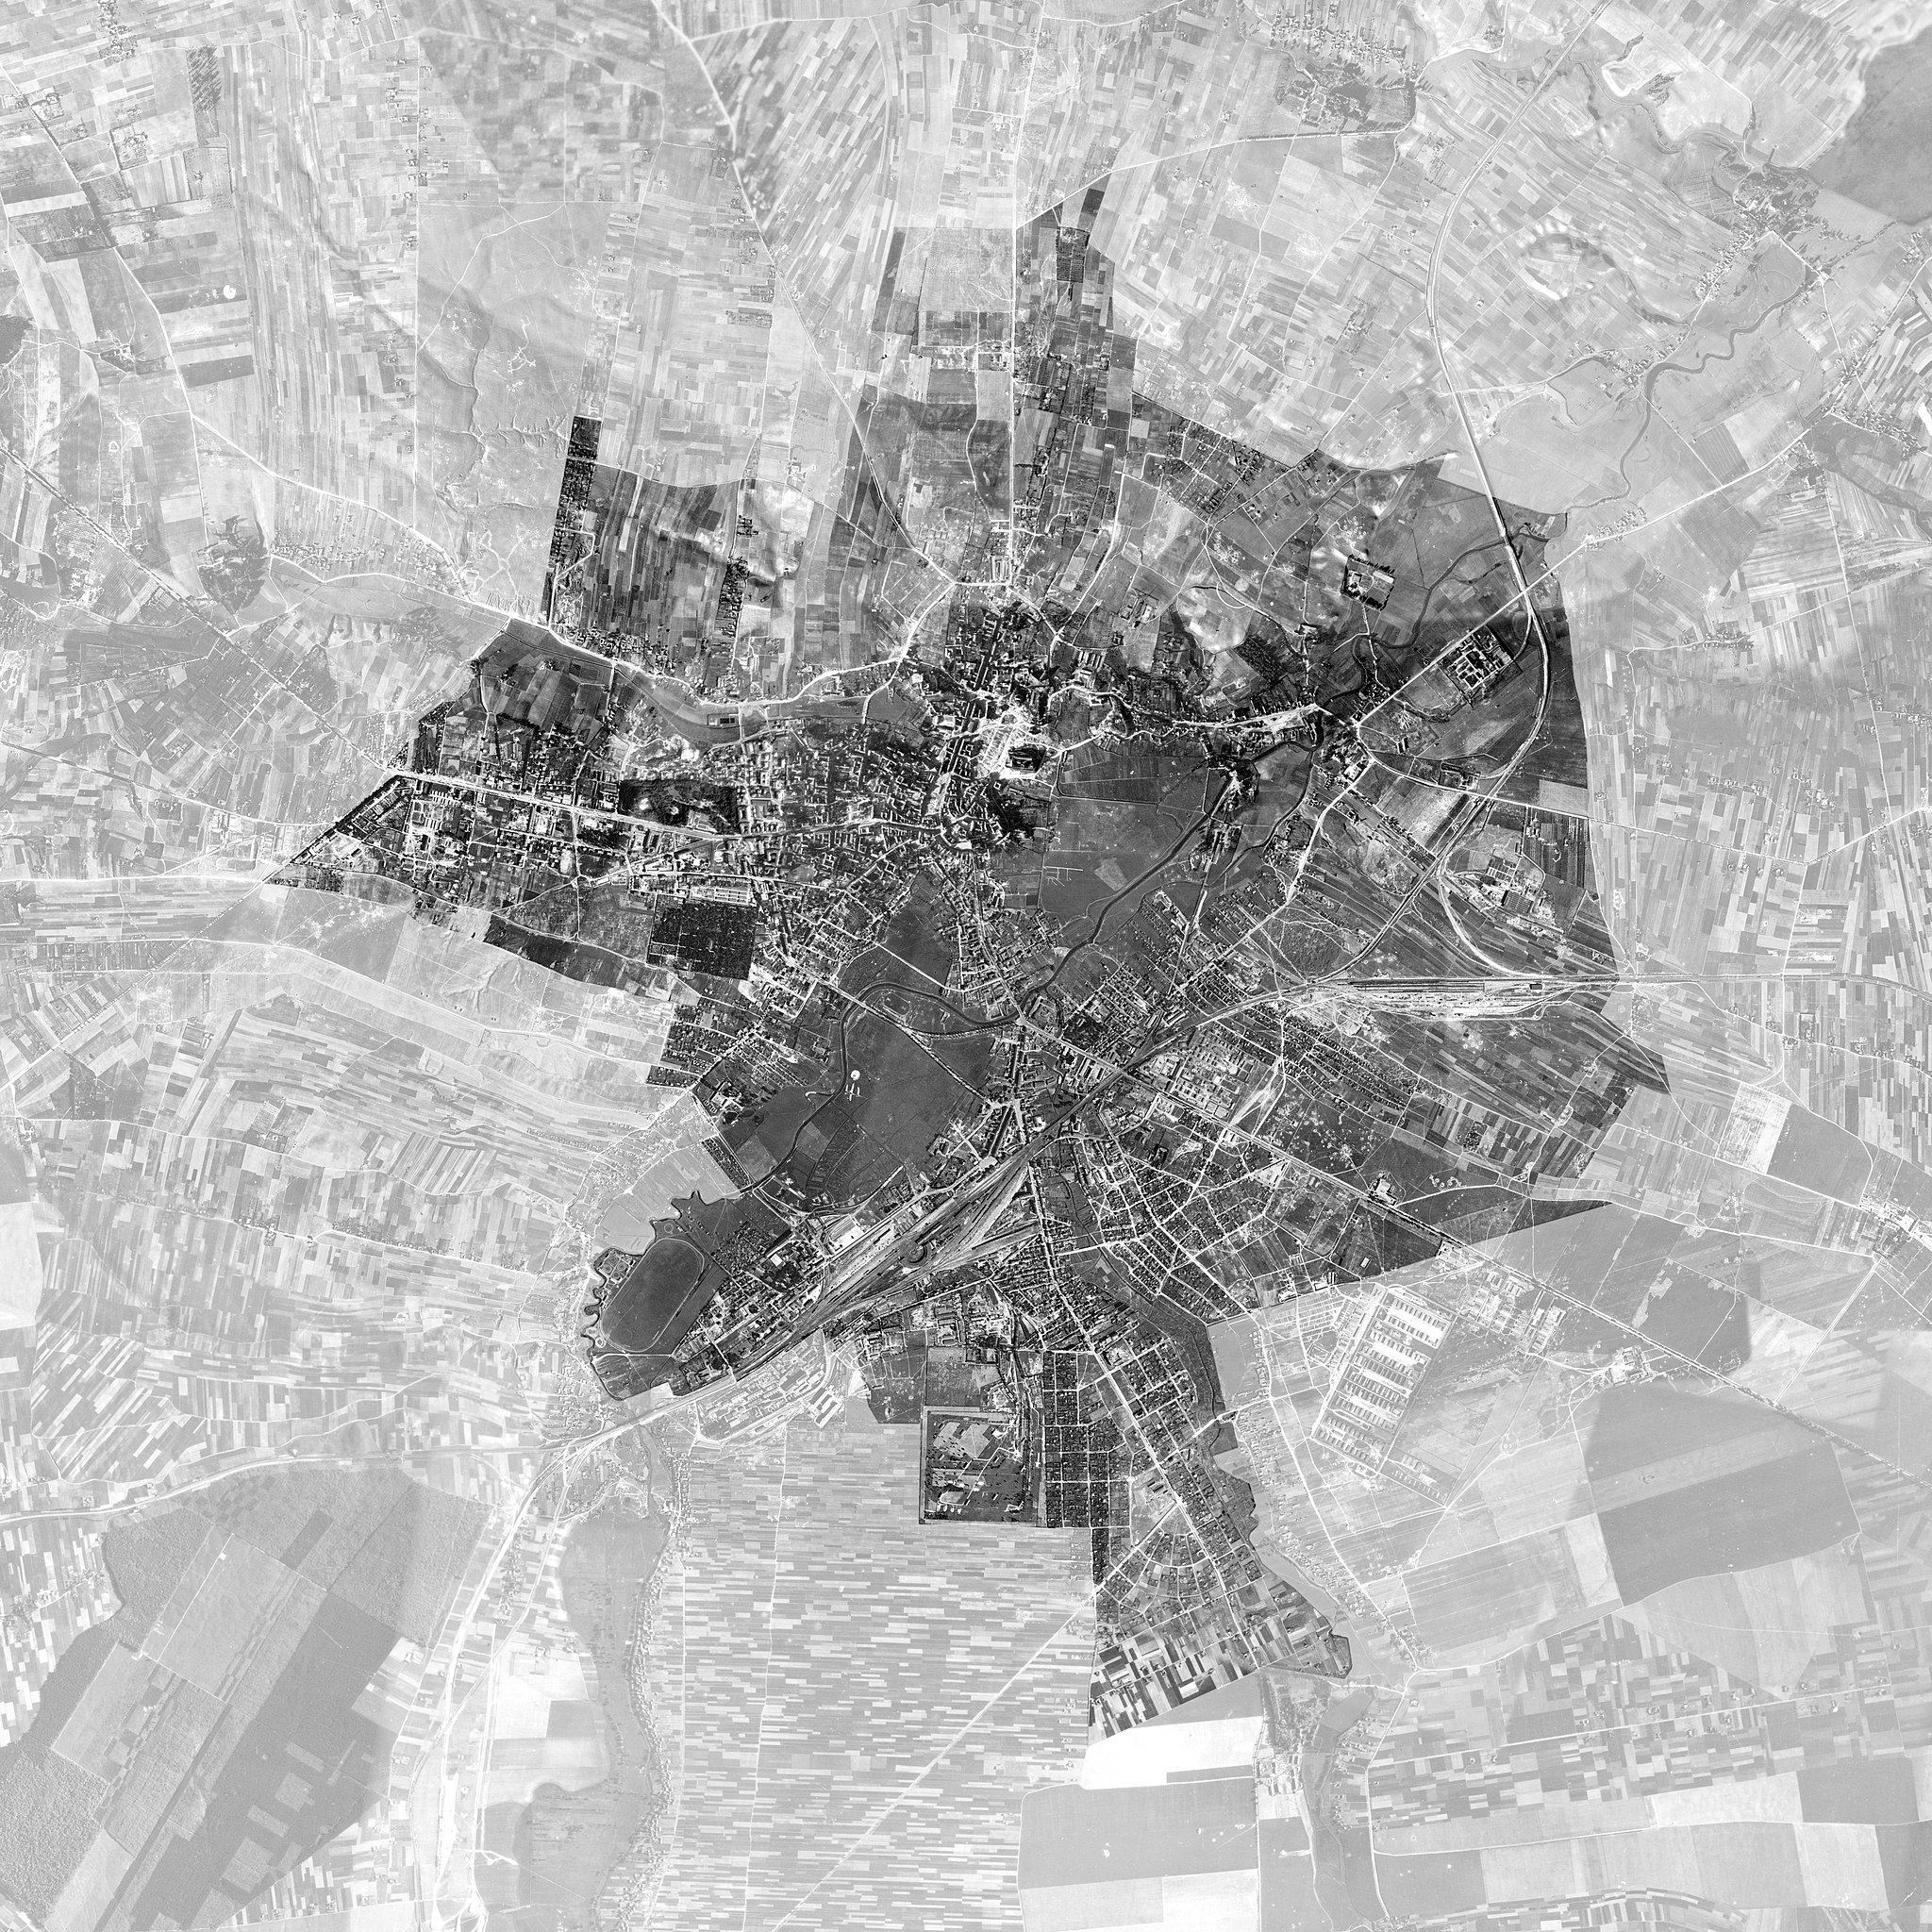 Foto: Imágenes aéreas de Lublin, Polonia, tomadas por la Luftwaffe en 1944. Las imágenes originales se obtuvieron de la Administración Nacional de Archivos y Registros, College Park, MD. Foto: Jakub Kuna/ CC BY-SA 4.0 via Wikimedia Commons.